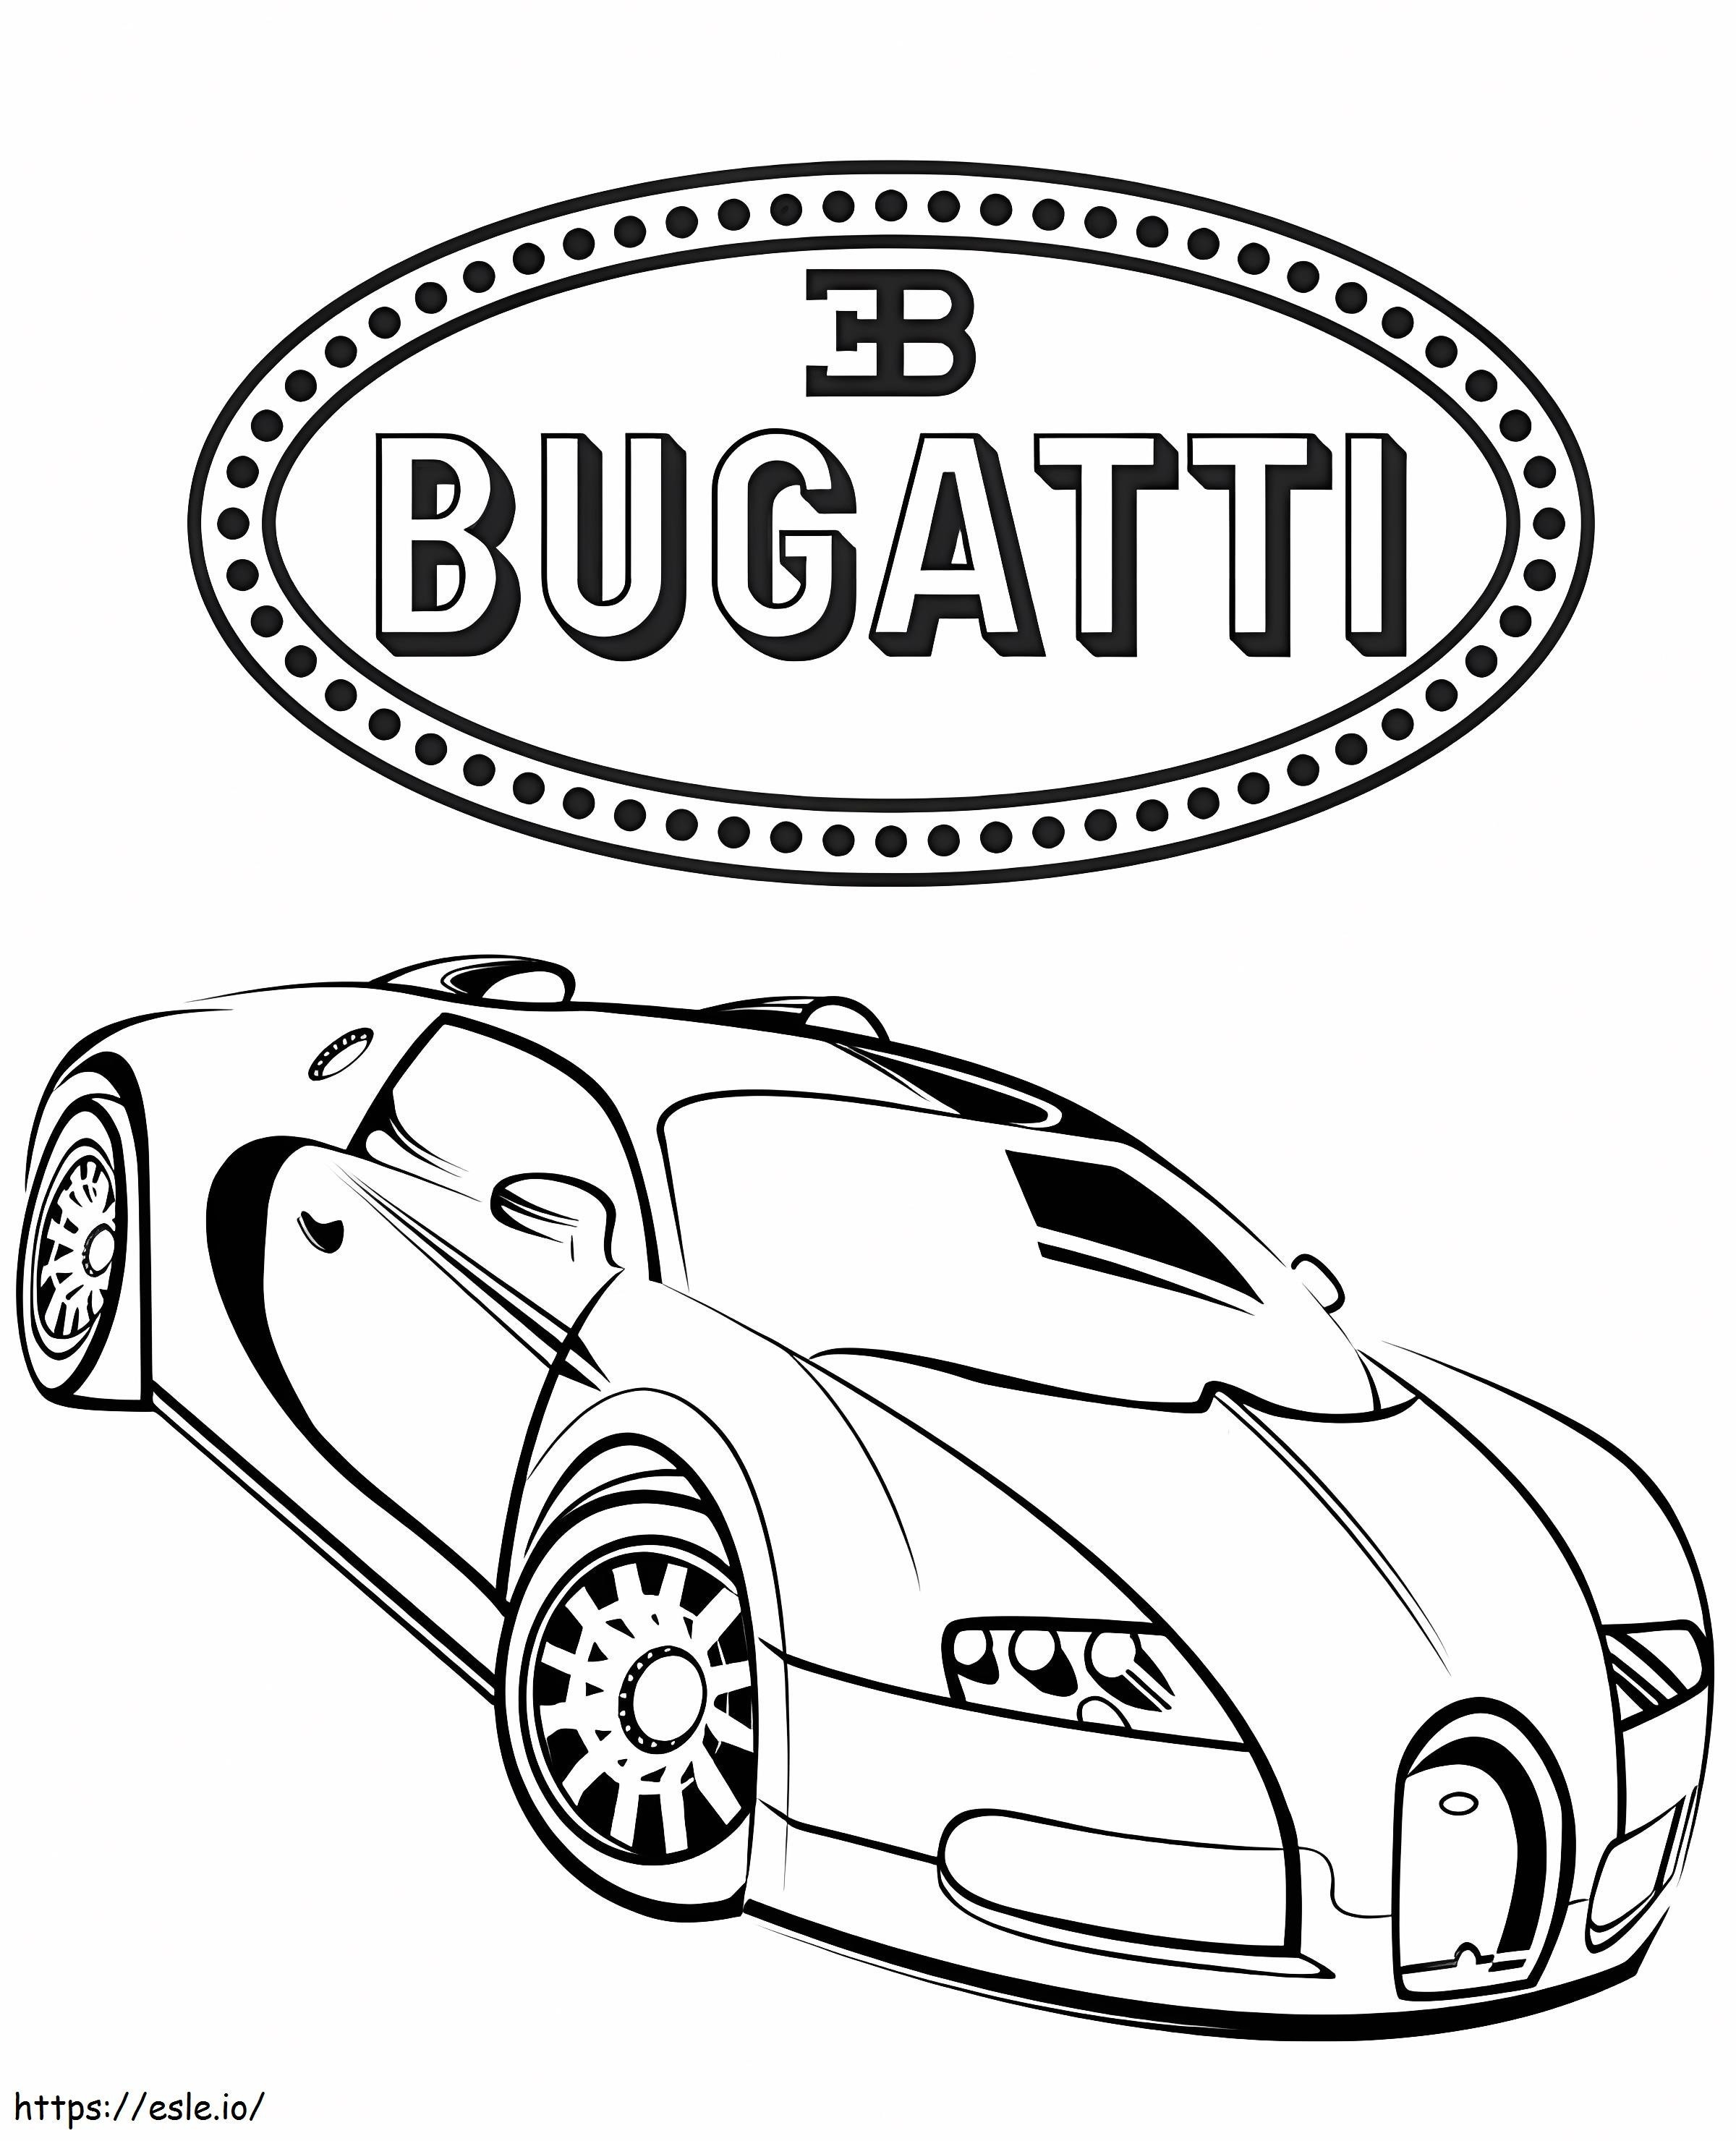 Car Bugatti 3 coloring page